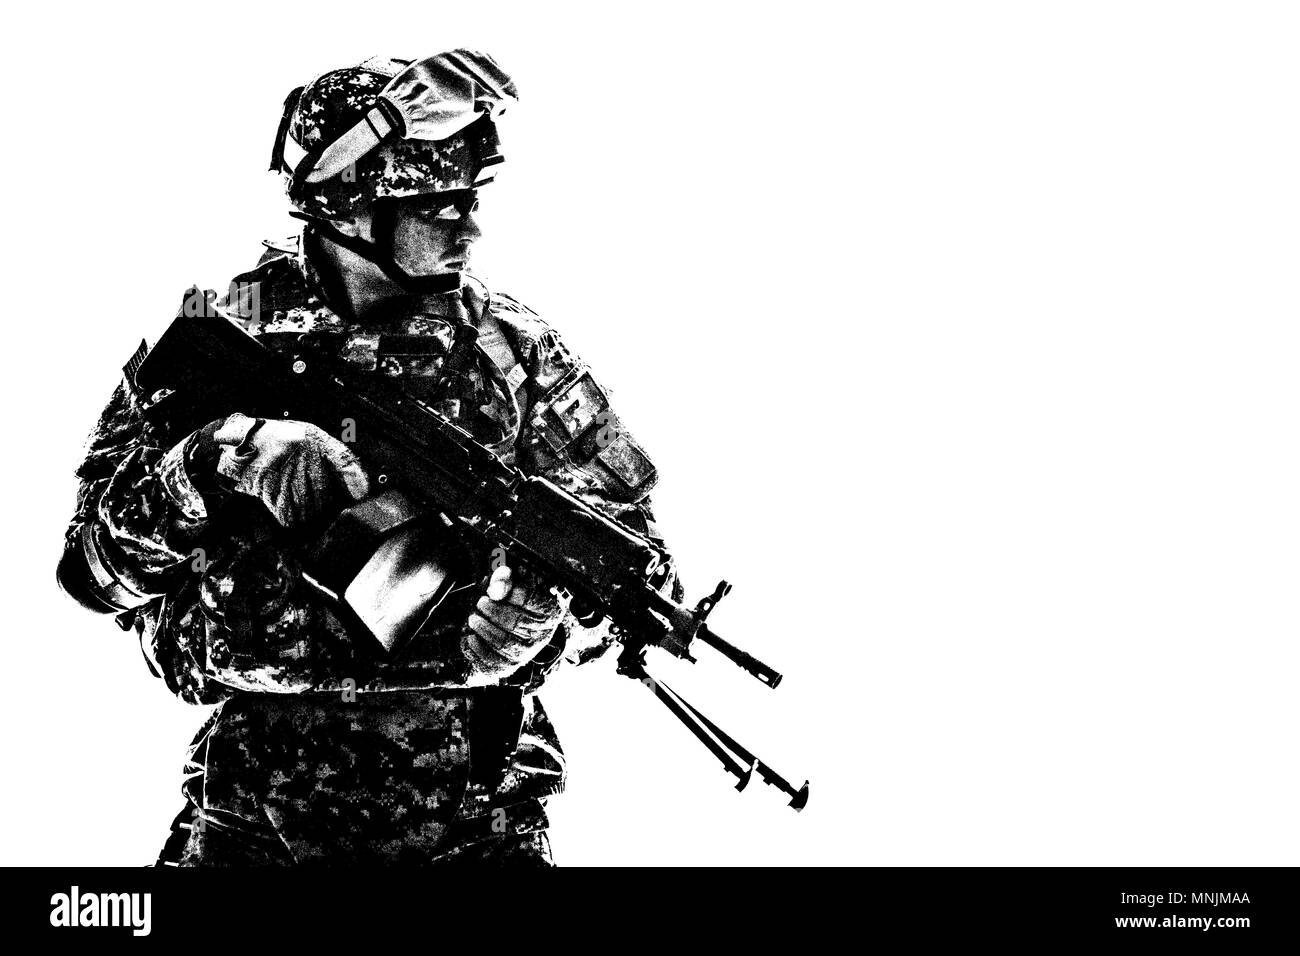 Army US Marine Corps tiratore con pistola della macchina Foto Stock